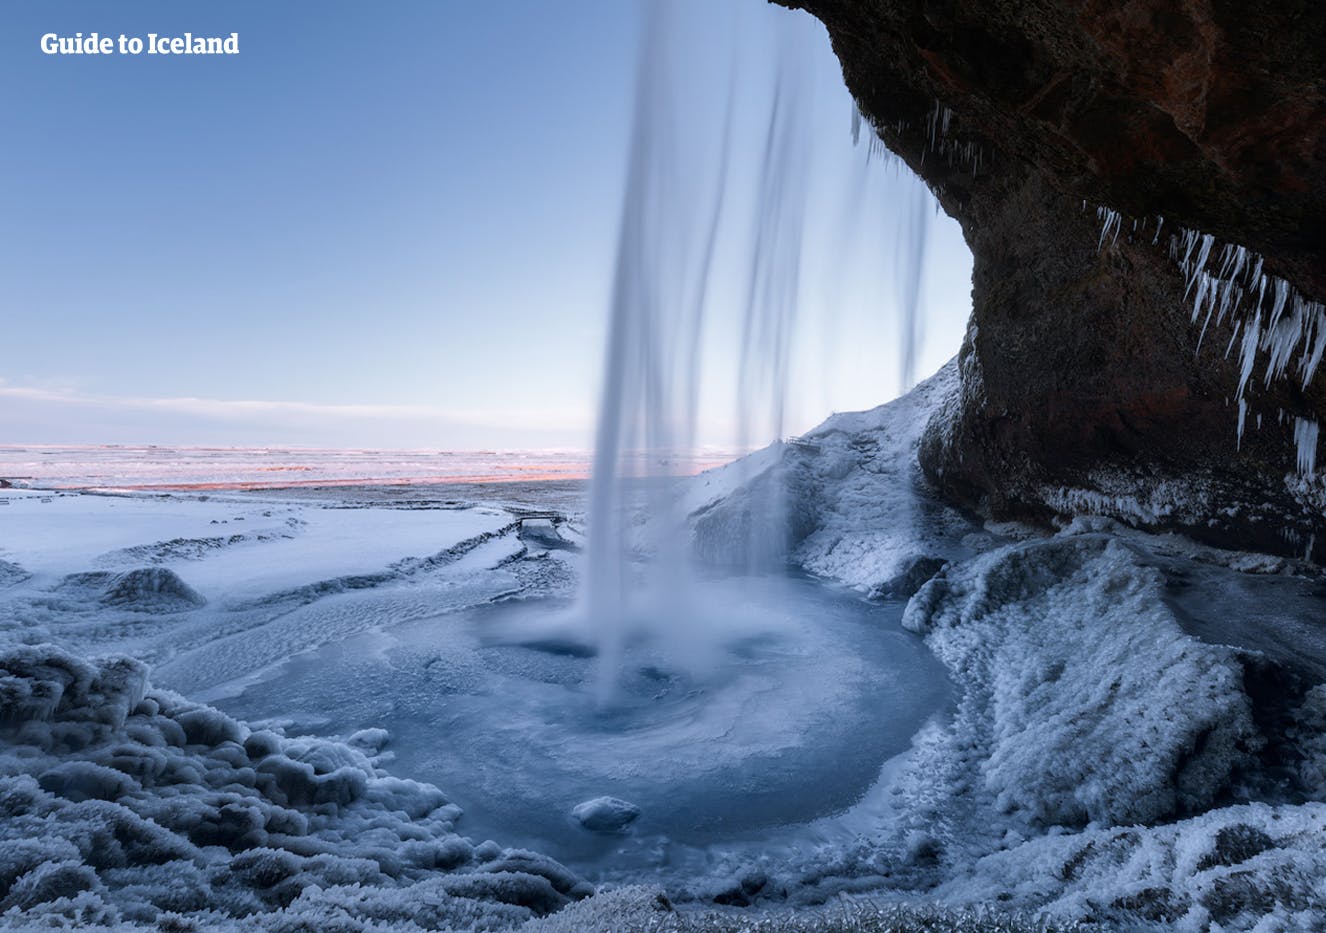 Quando visiti l'Islanda in inverno, tieni d'occhio il cielo, perché potresti avvistare l'aurora boreale.